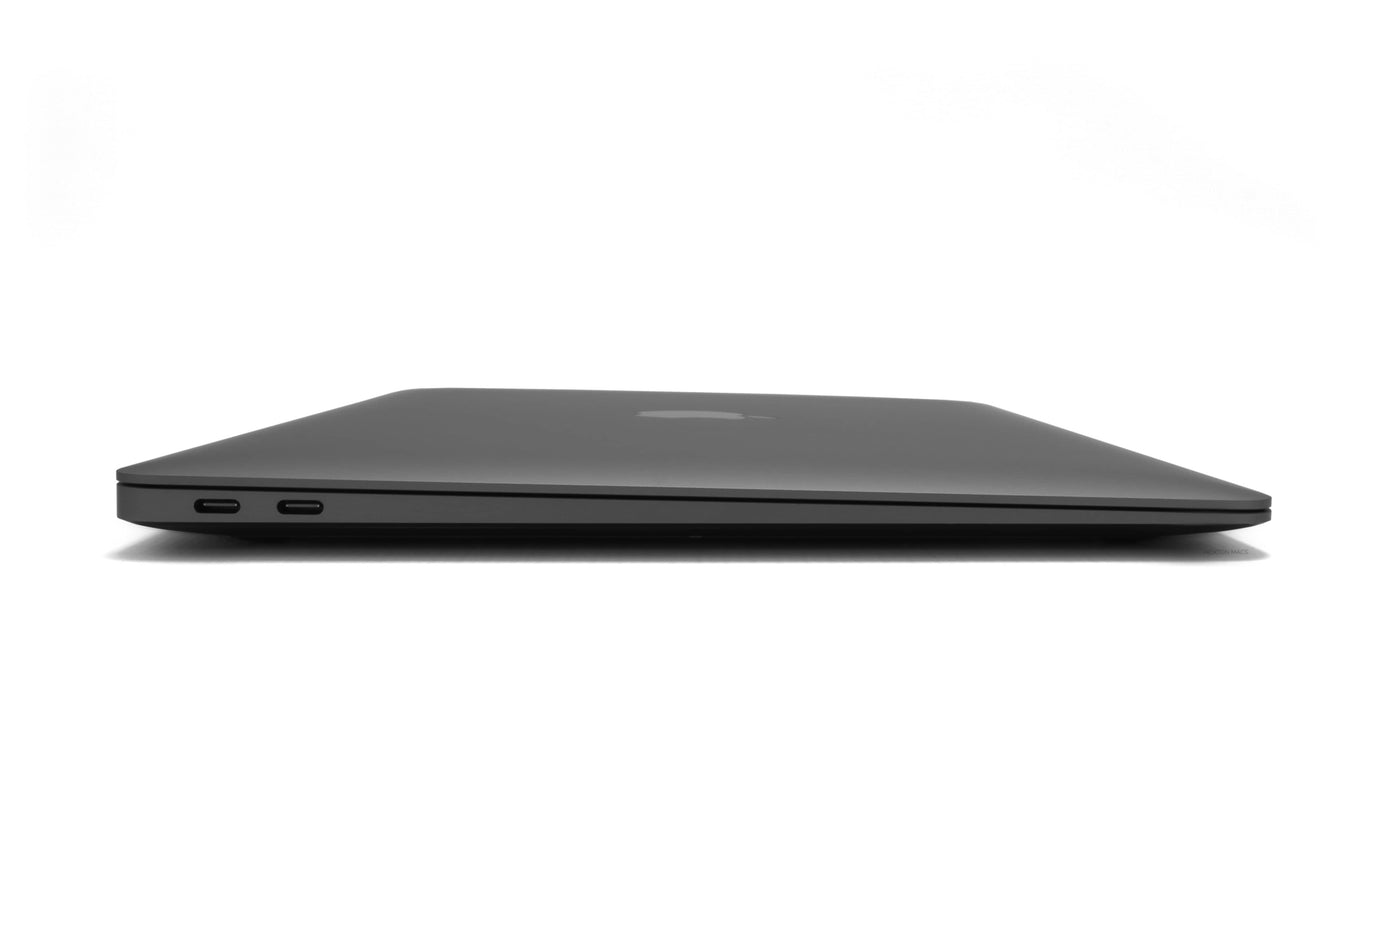 Apple MacBook Air 13-inch MacBook Air 13-inch Core i5 1.1GHz (Space Grey, 2020) - Fair